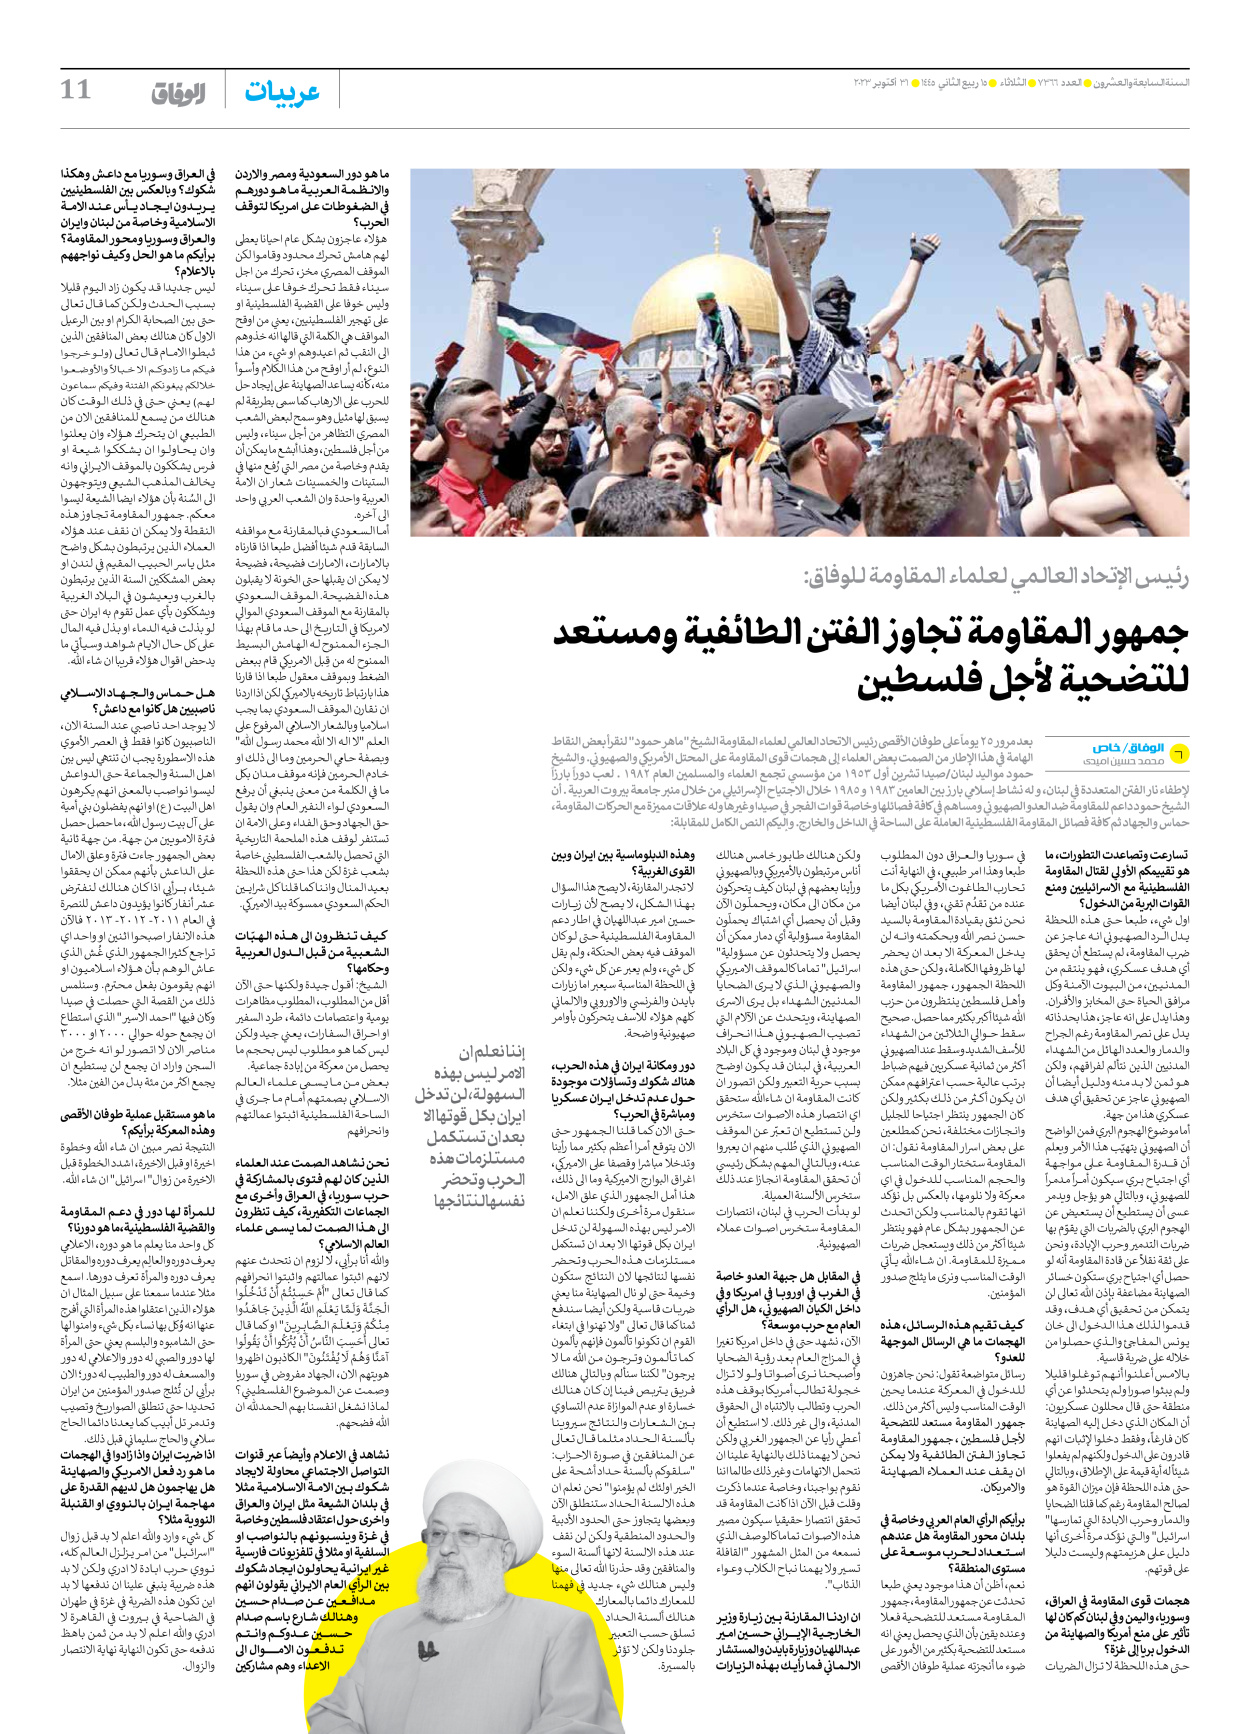 صحیفة ایران الدولیة الوفاق - العدد سبعة آلاف وثلاثمائة وستة وستون - ٣١ أكتوبر ٢٠٢٣ - الصفحة ۱۱